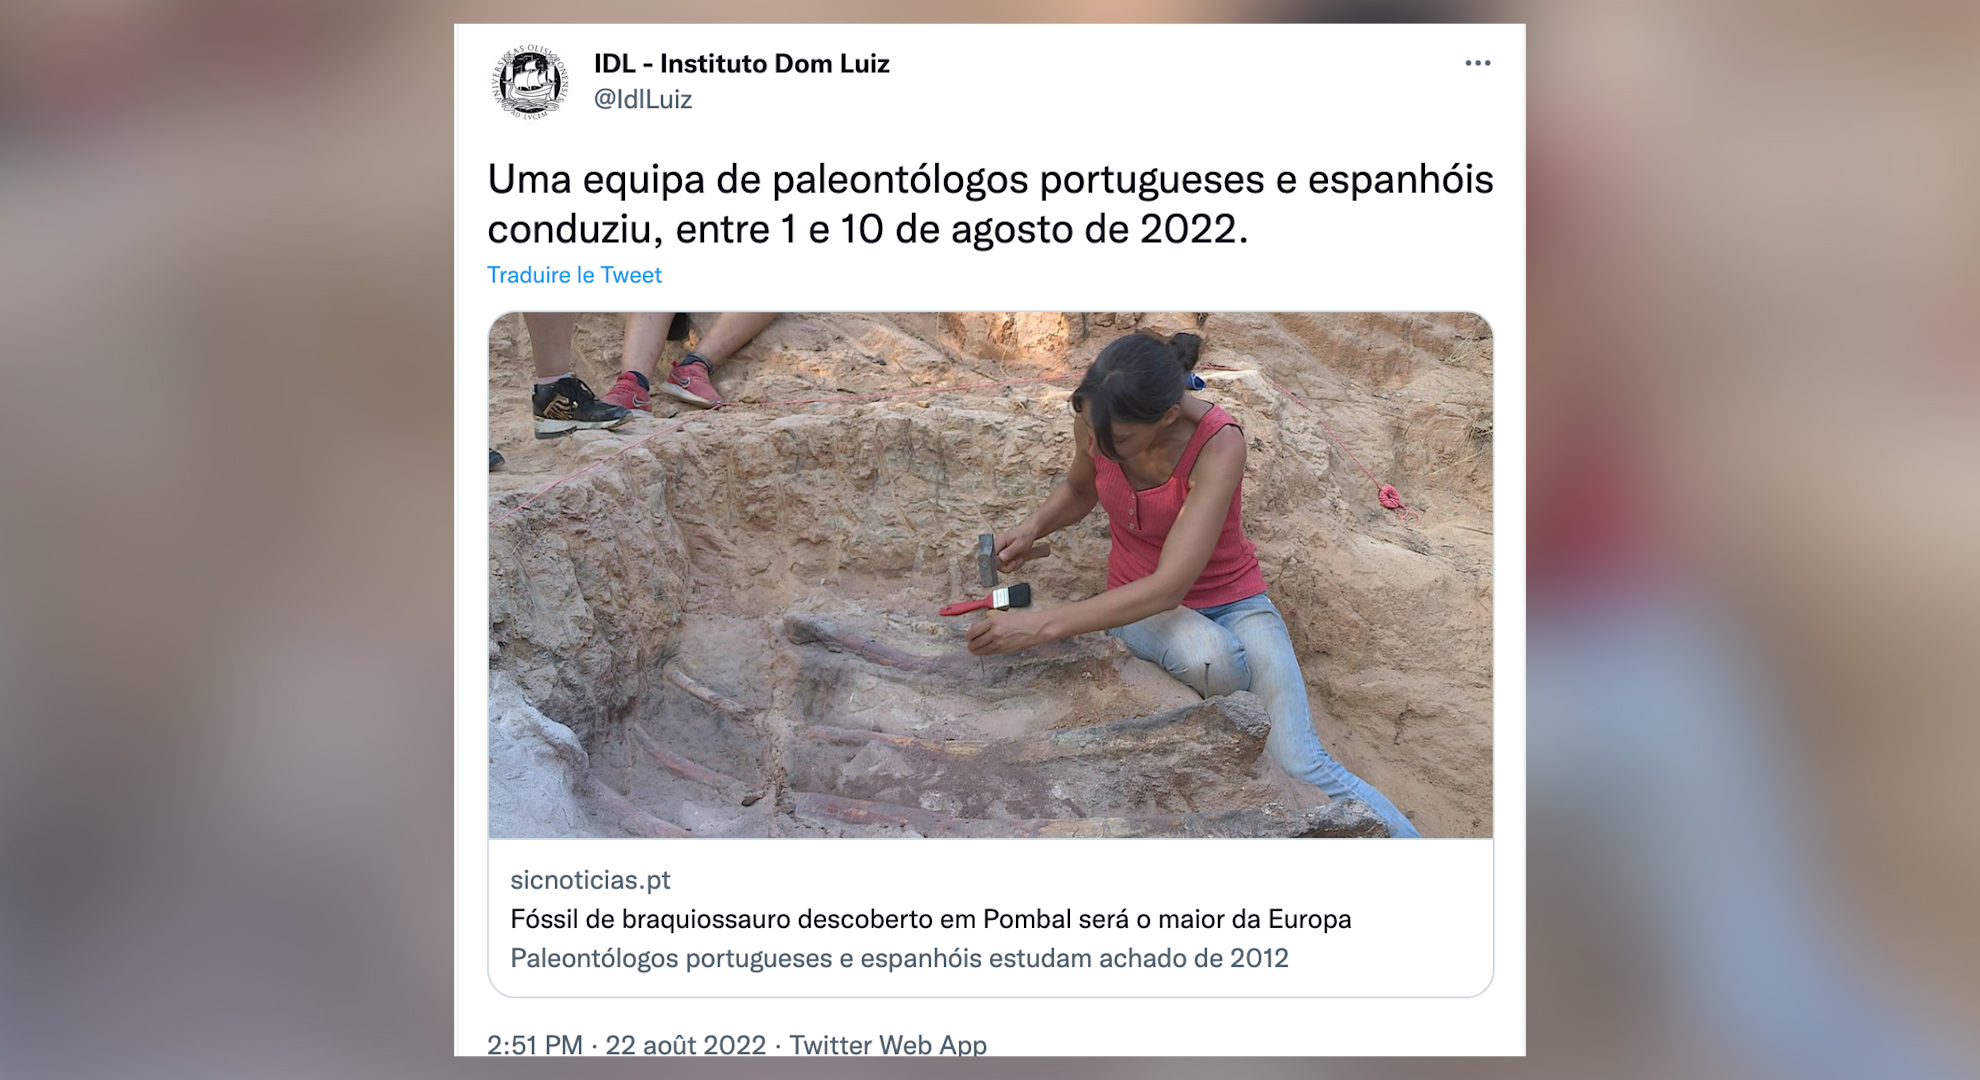 Dinosaur bones 25 meters long were found in Portugal